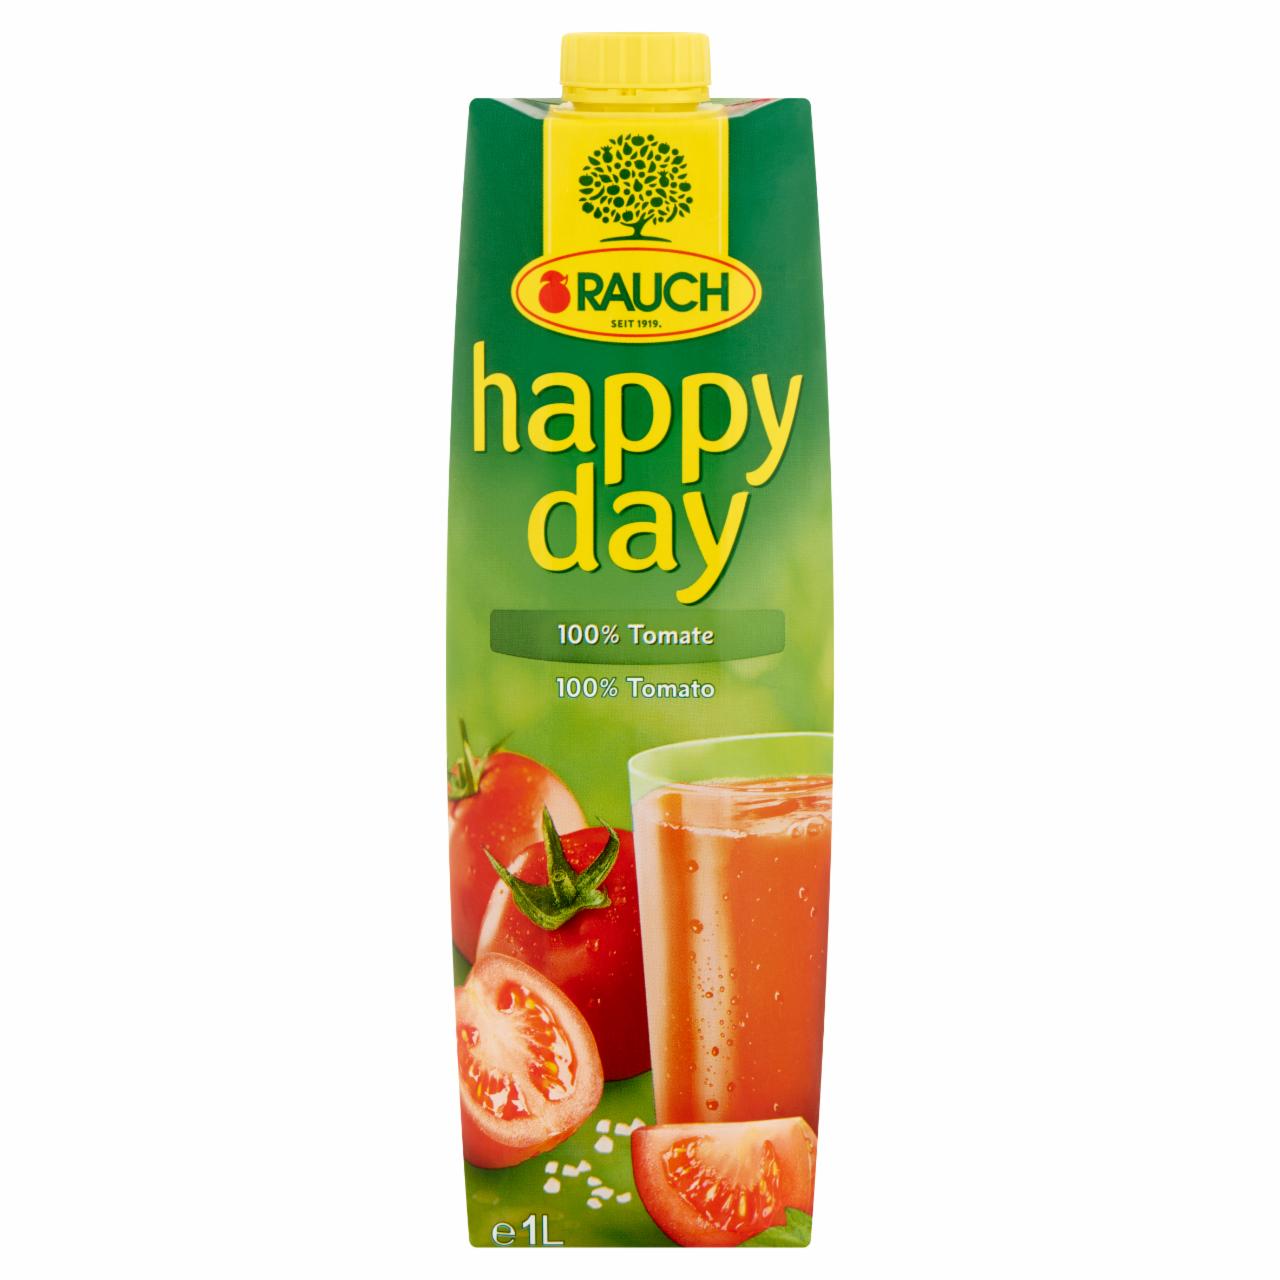 Képek - Rauch Happy Day 100% paradicsomlé sűrítményből tengeri sóval 1 l